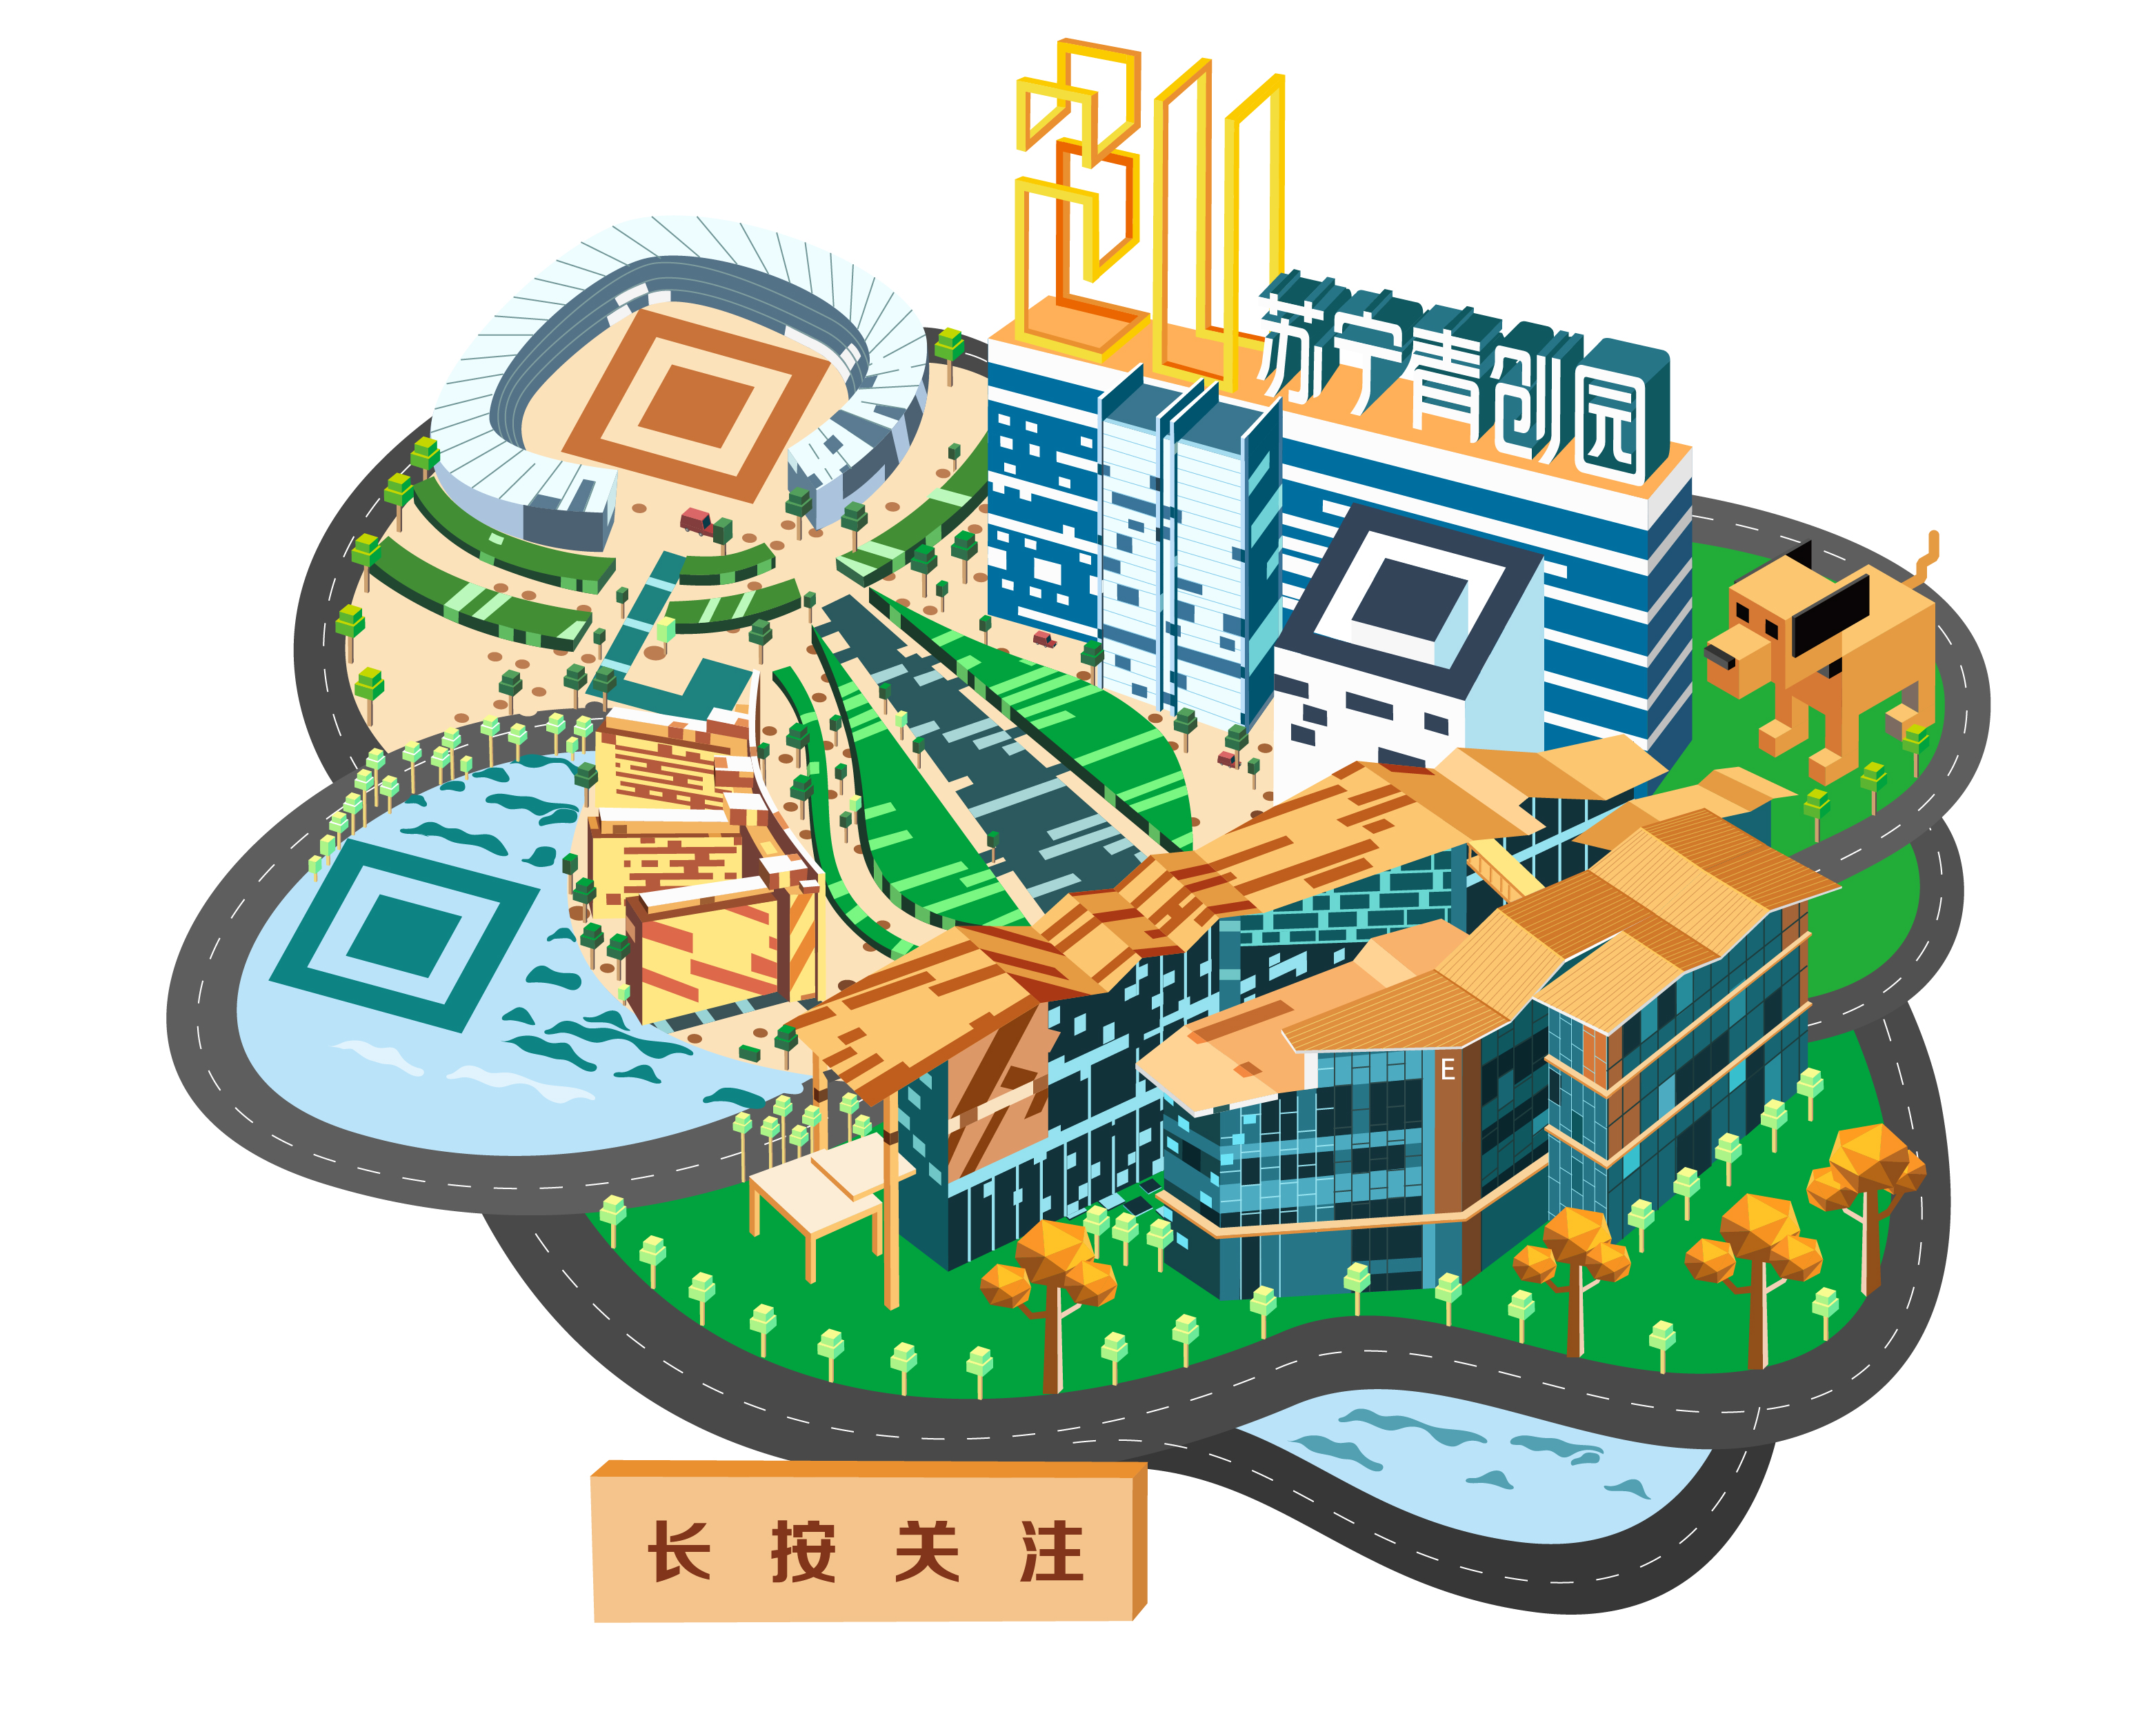 苏宁青创园立体静态艺术二维码创意二维码-第九工场设计外包